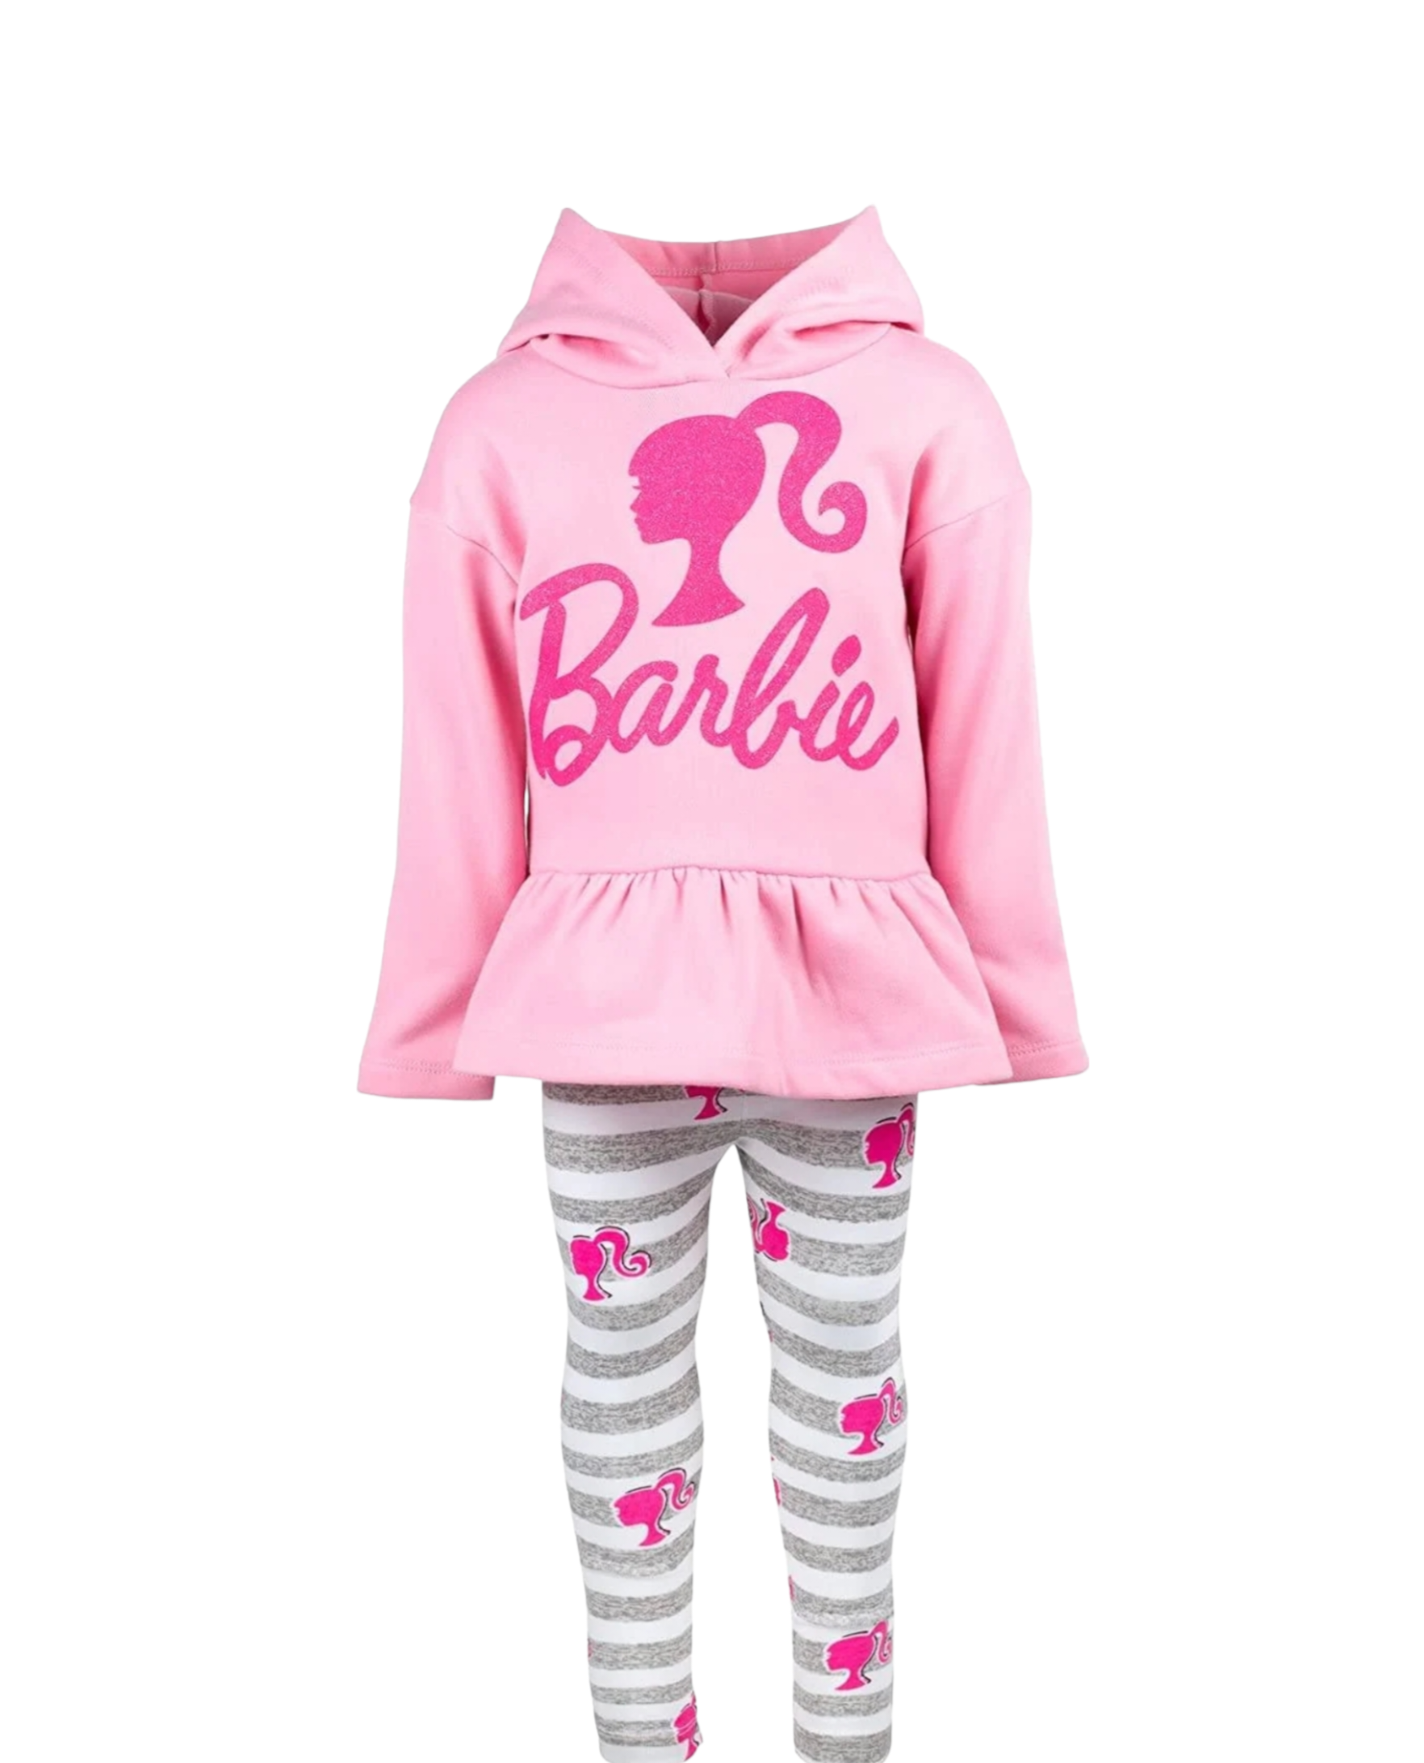 Barbie hoodie & leggings